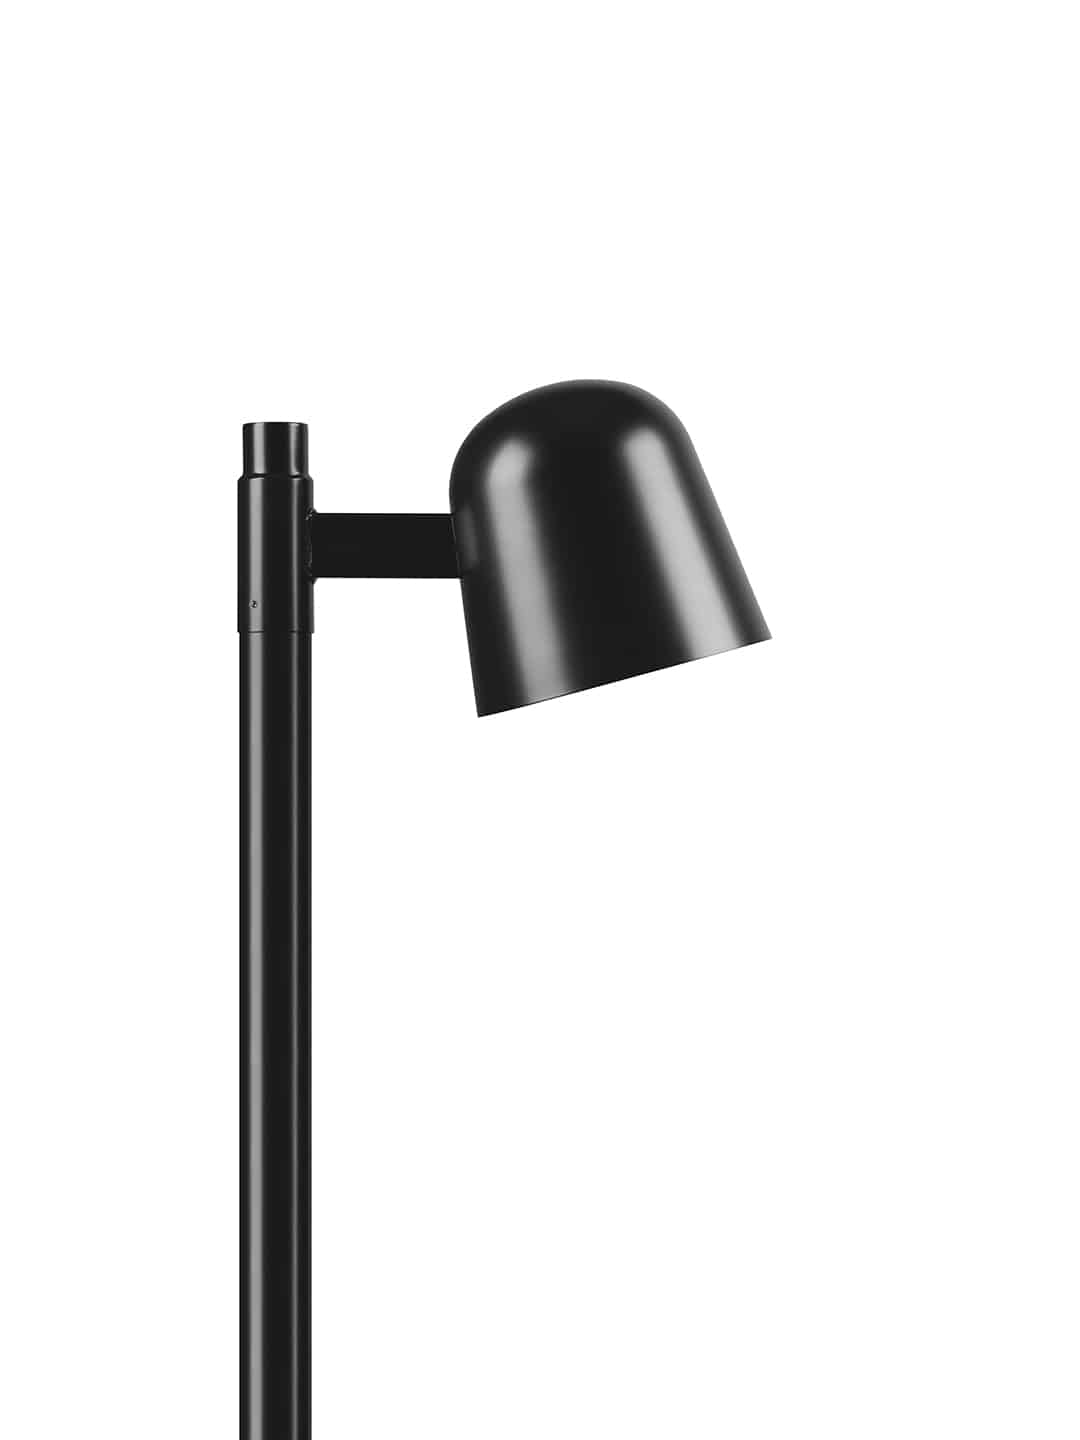 Стильный уличный светильник Zero Lighting Convex Pole черного цвета